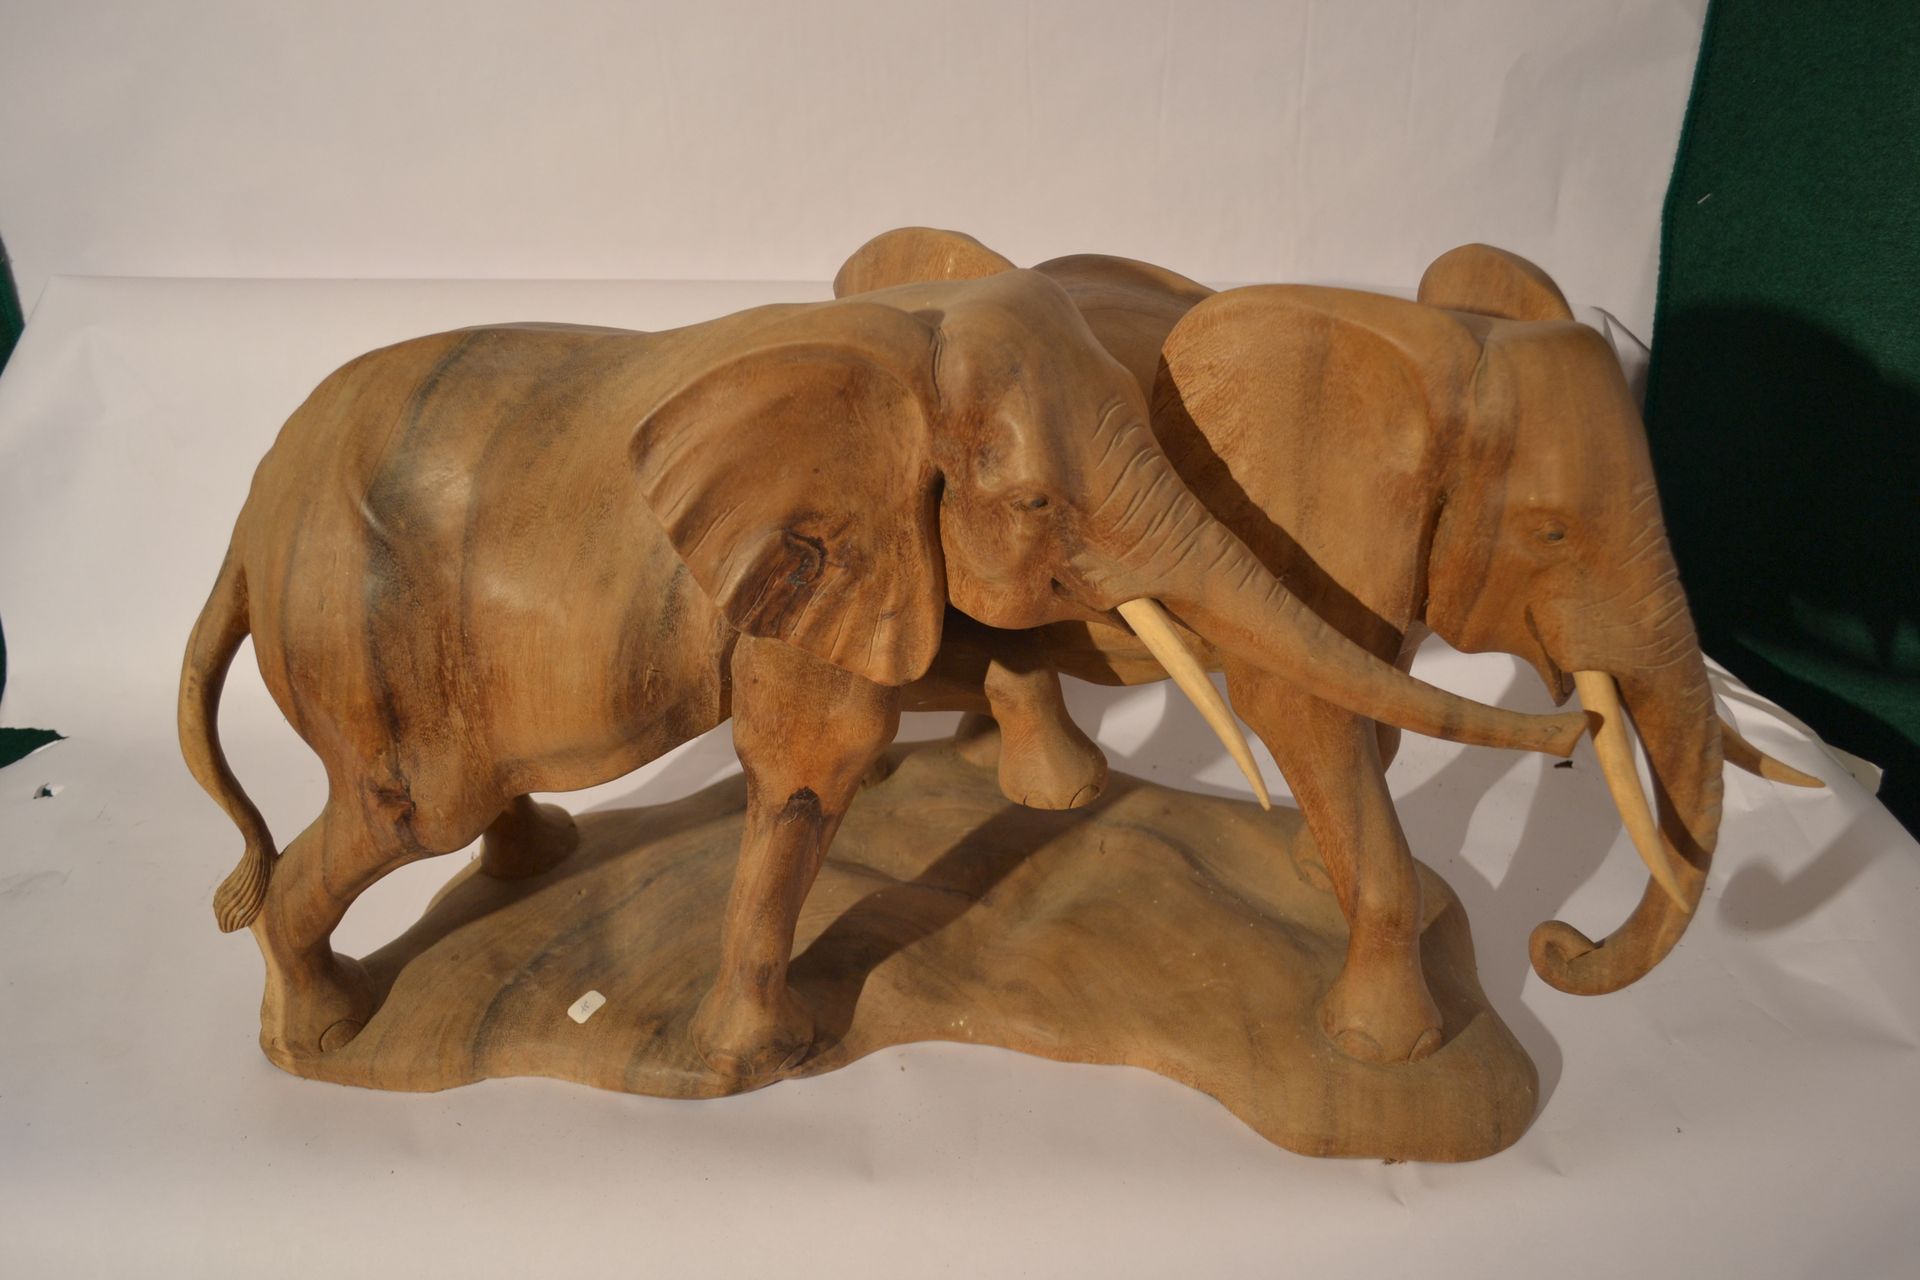 Null 手工雕刻的大象夫妇。

苏木

70 x 40 x 30

重量：13公斤。